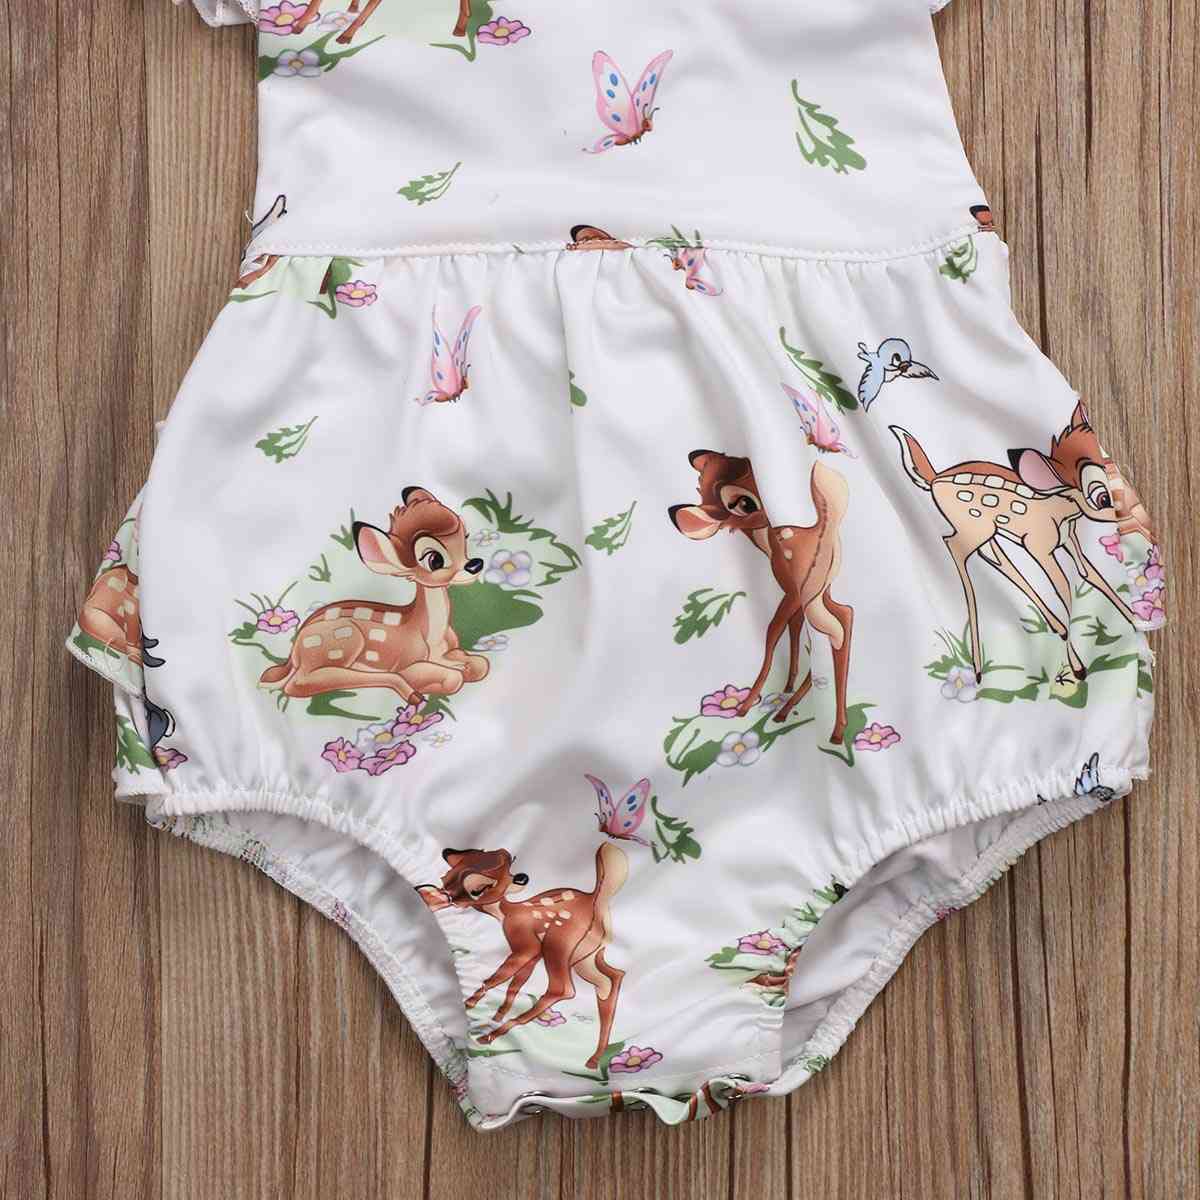 Mode nyfødt lille barn spædbarn baby piger hjorte flæser romper jumpsuit tøj tøj - 6m